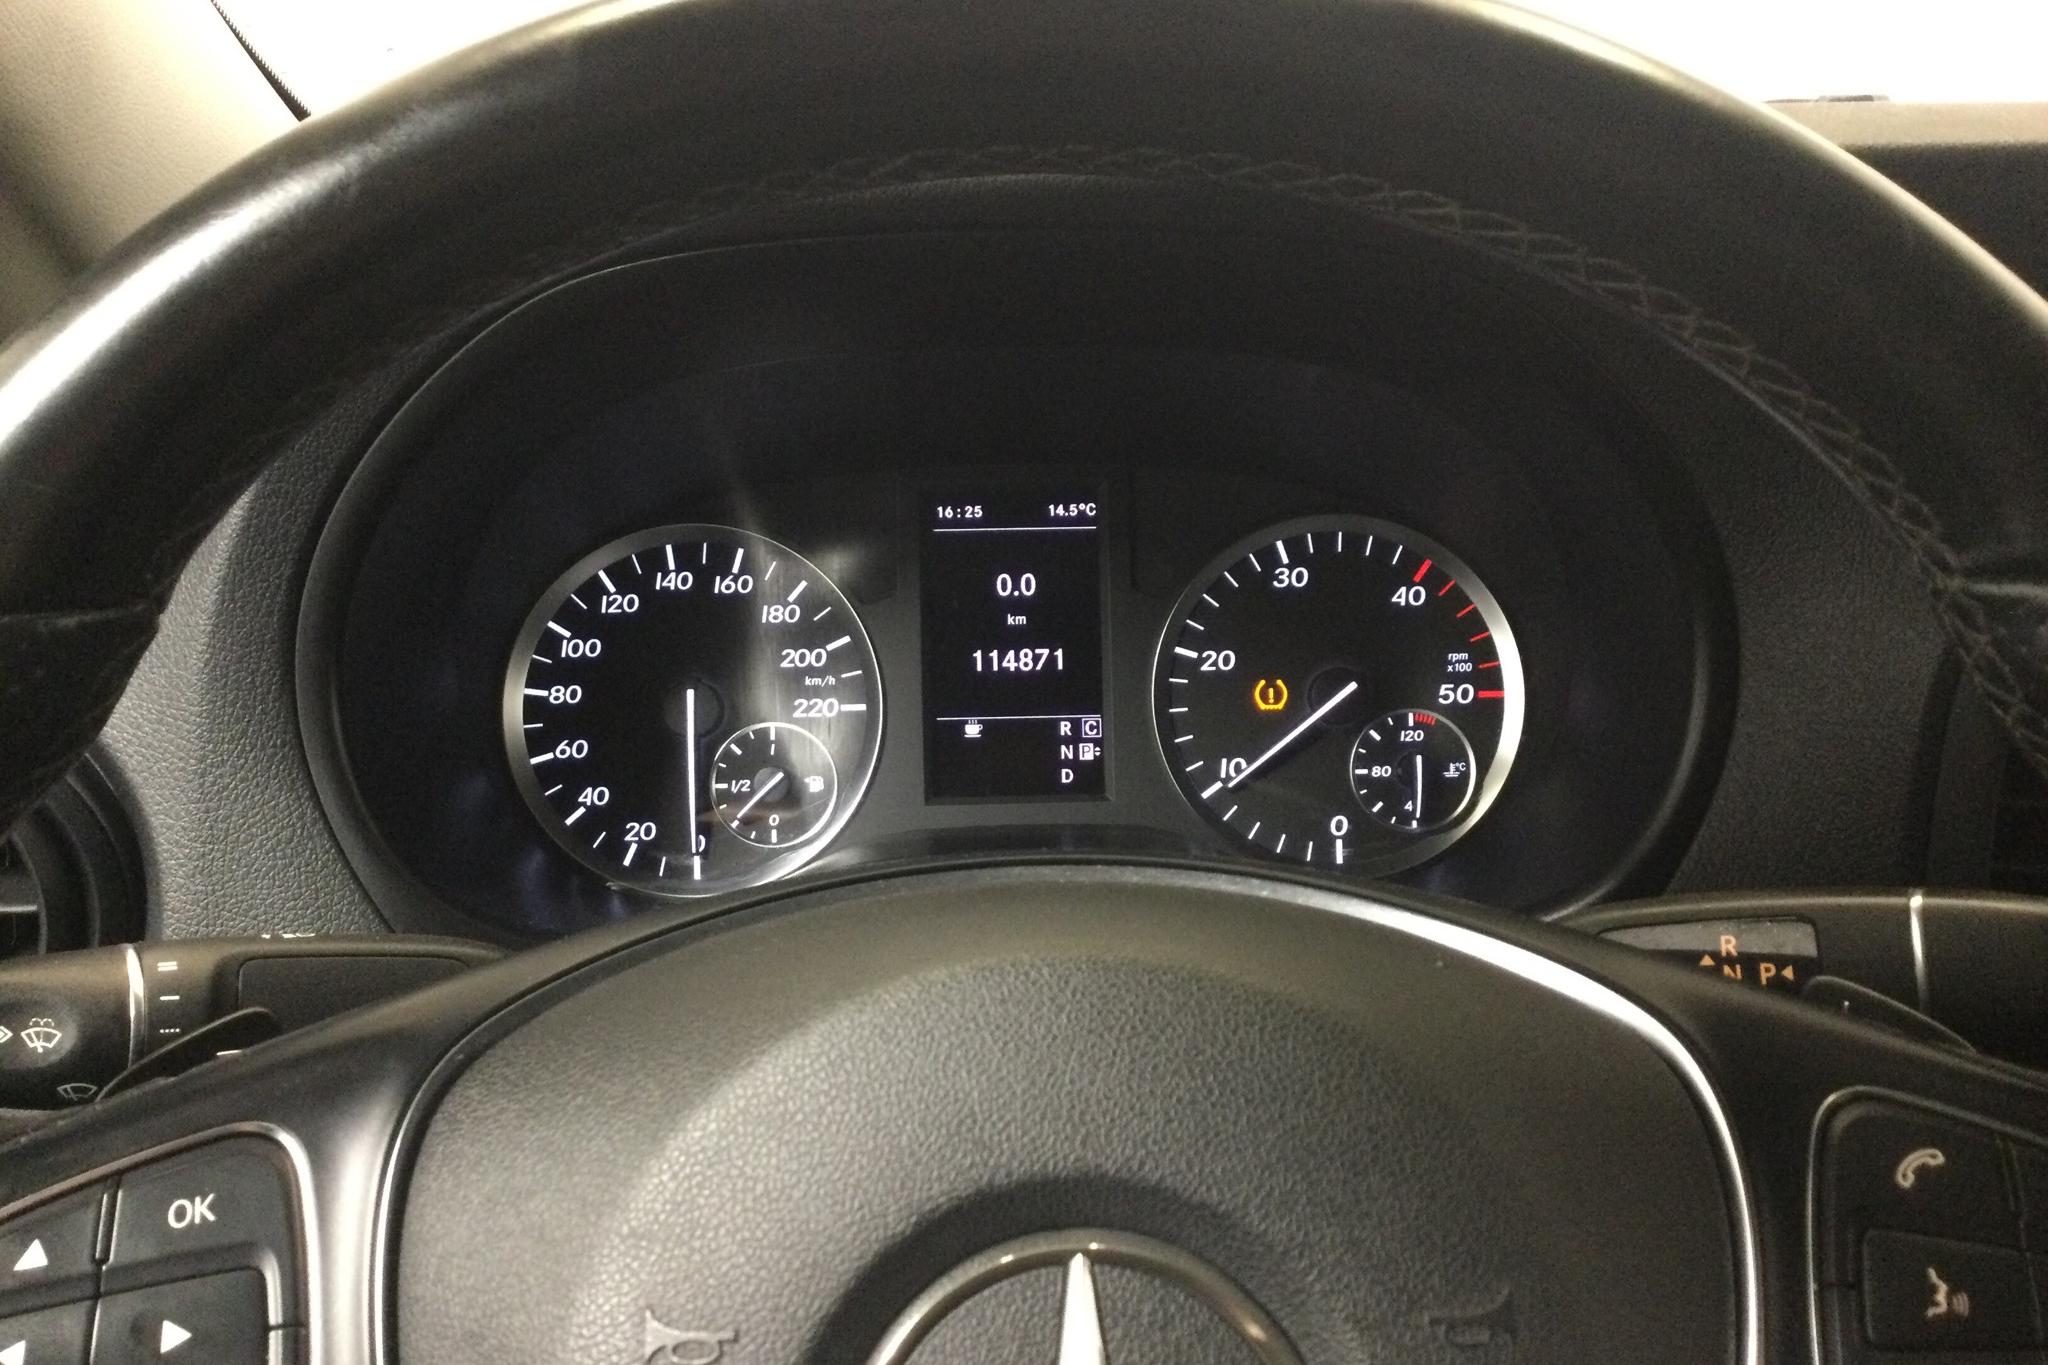 Mercedes Vito 119 BlueTEC W640 (190hk) - 114 880 km - Automatic - silver - 2015